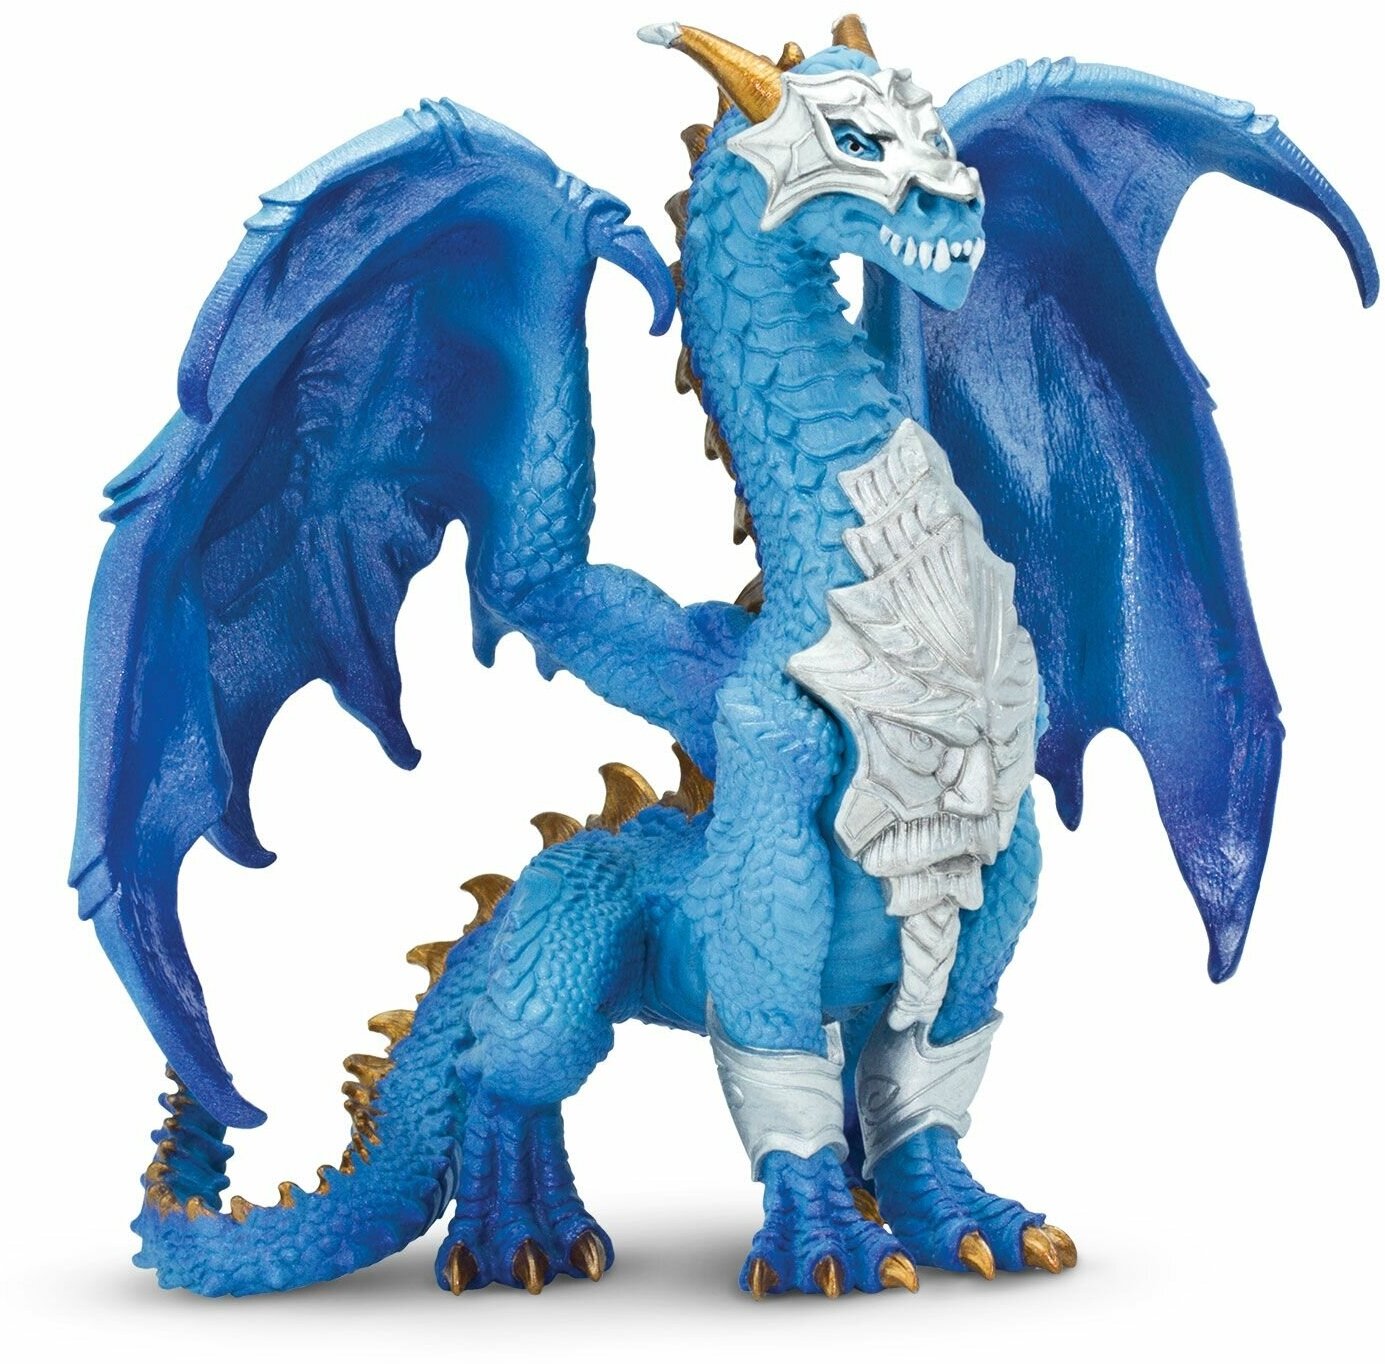 Фигурка дракона Safari Ltd Дракон хранитель, для детей, игрушка коллекционная, 10129